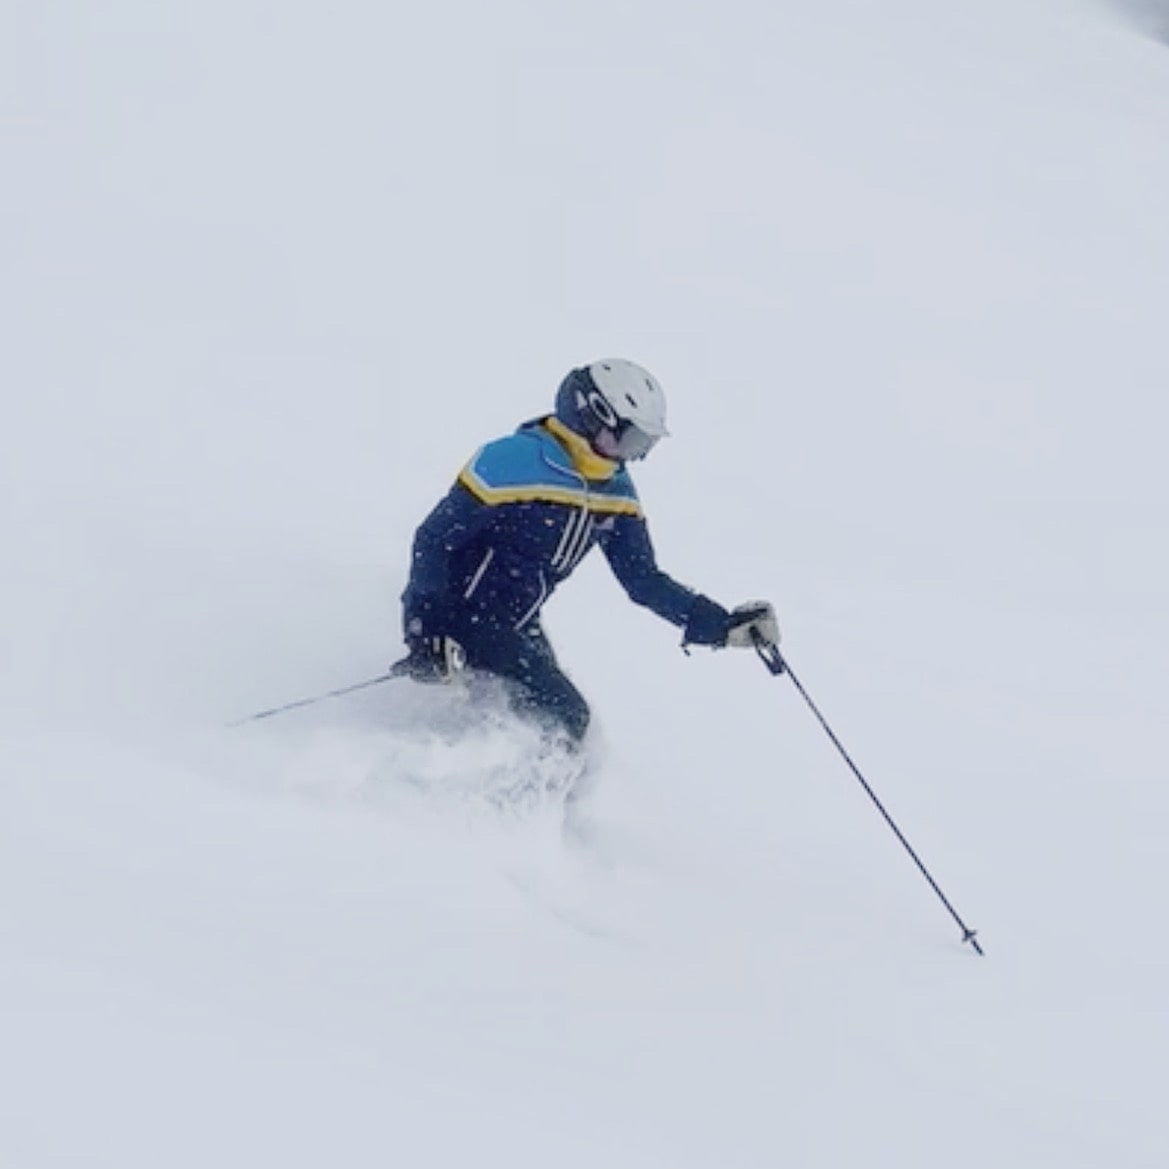 Julia skiing